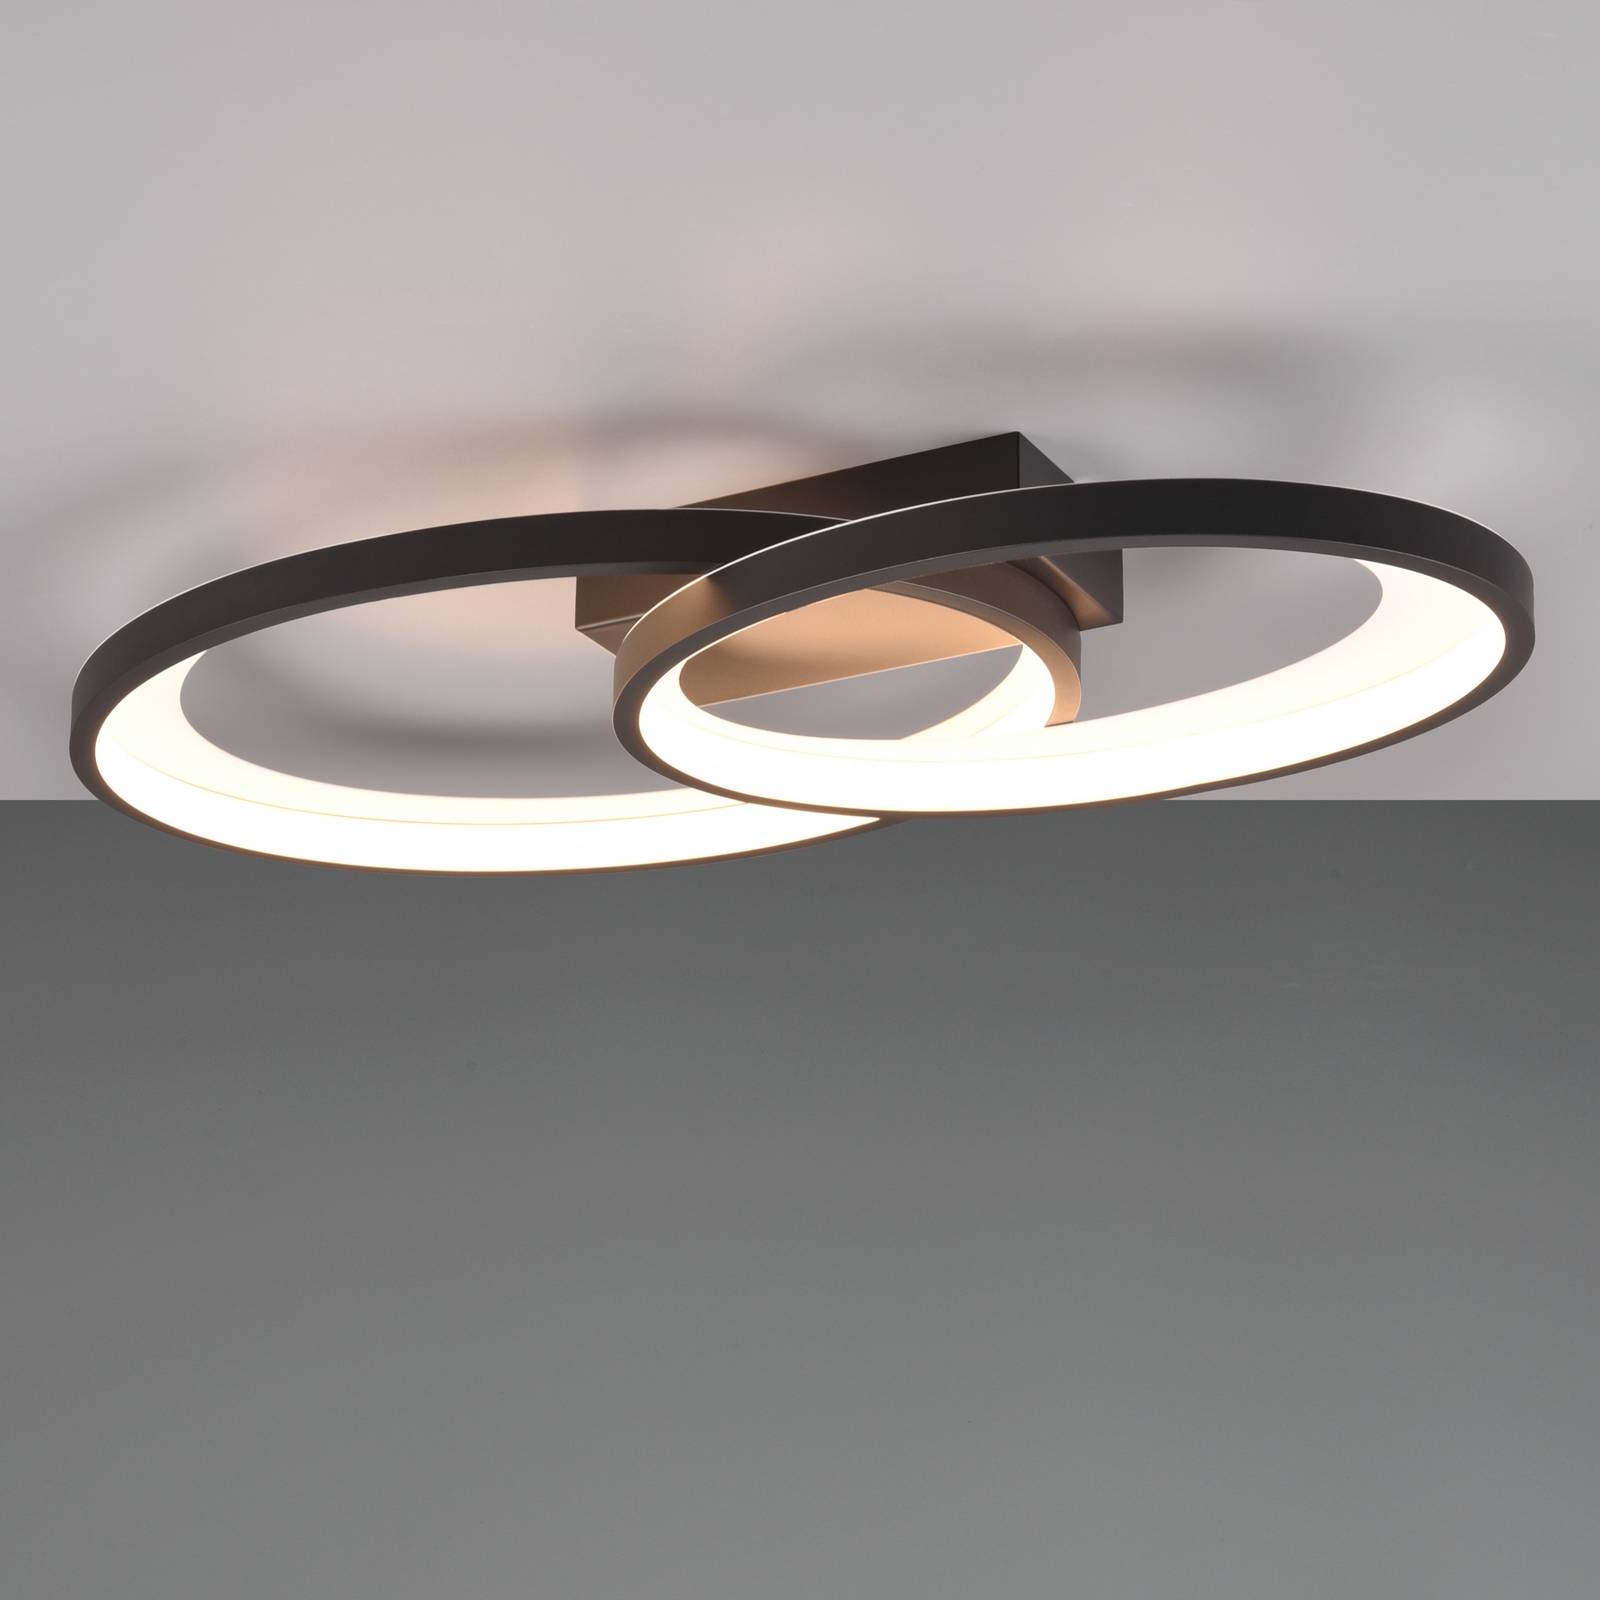 Stropné LED svetlo Malaga s 2 kruhmi, čierna